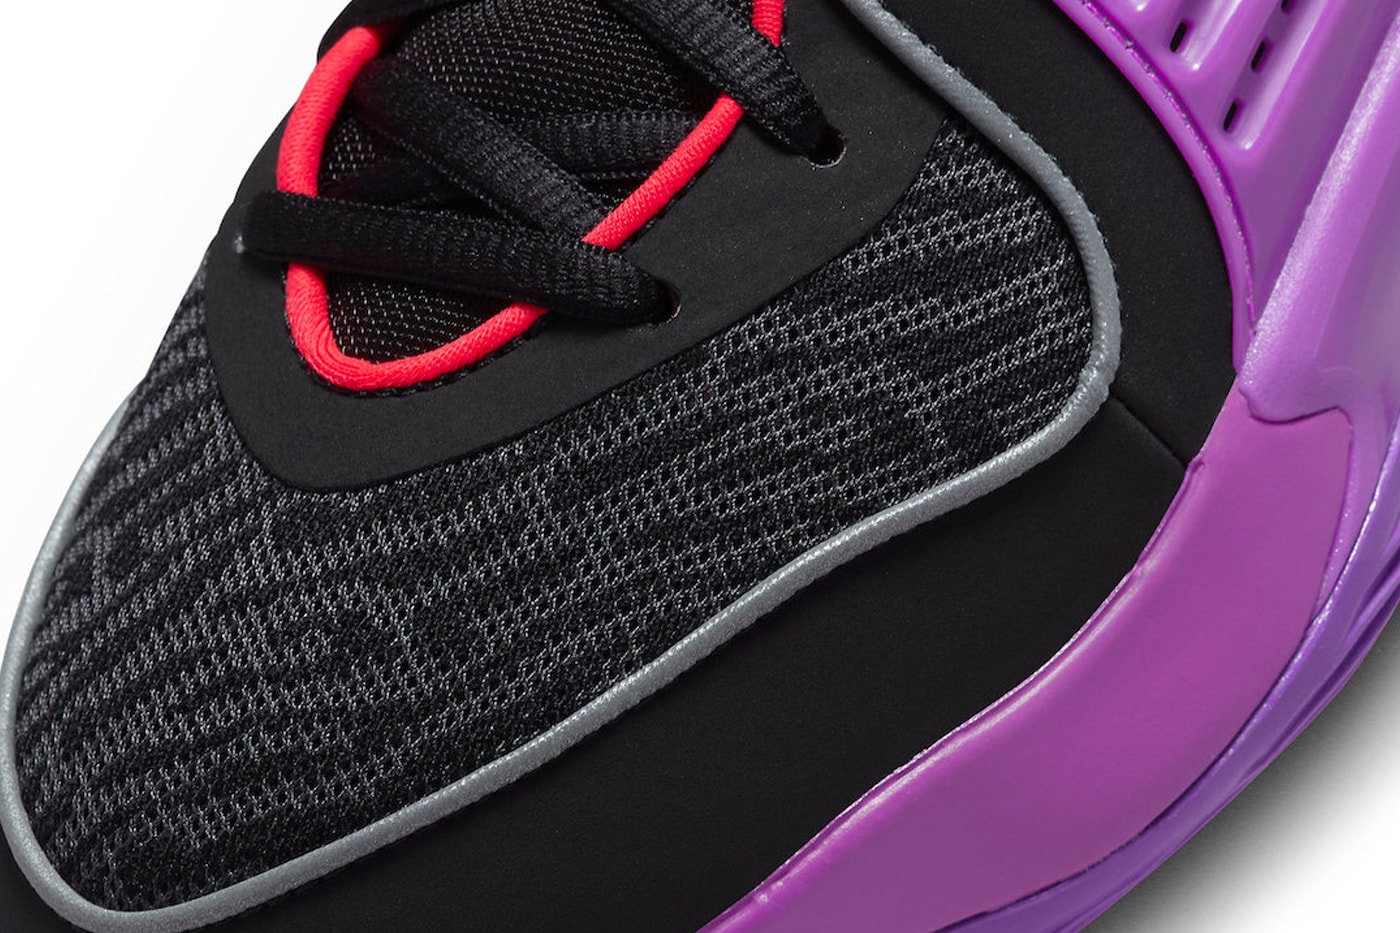 Nike KD 16 Black Vivid Purple Release Info DV2916-002 Date Buy Price Kevin Durant